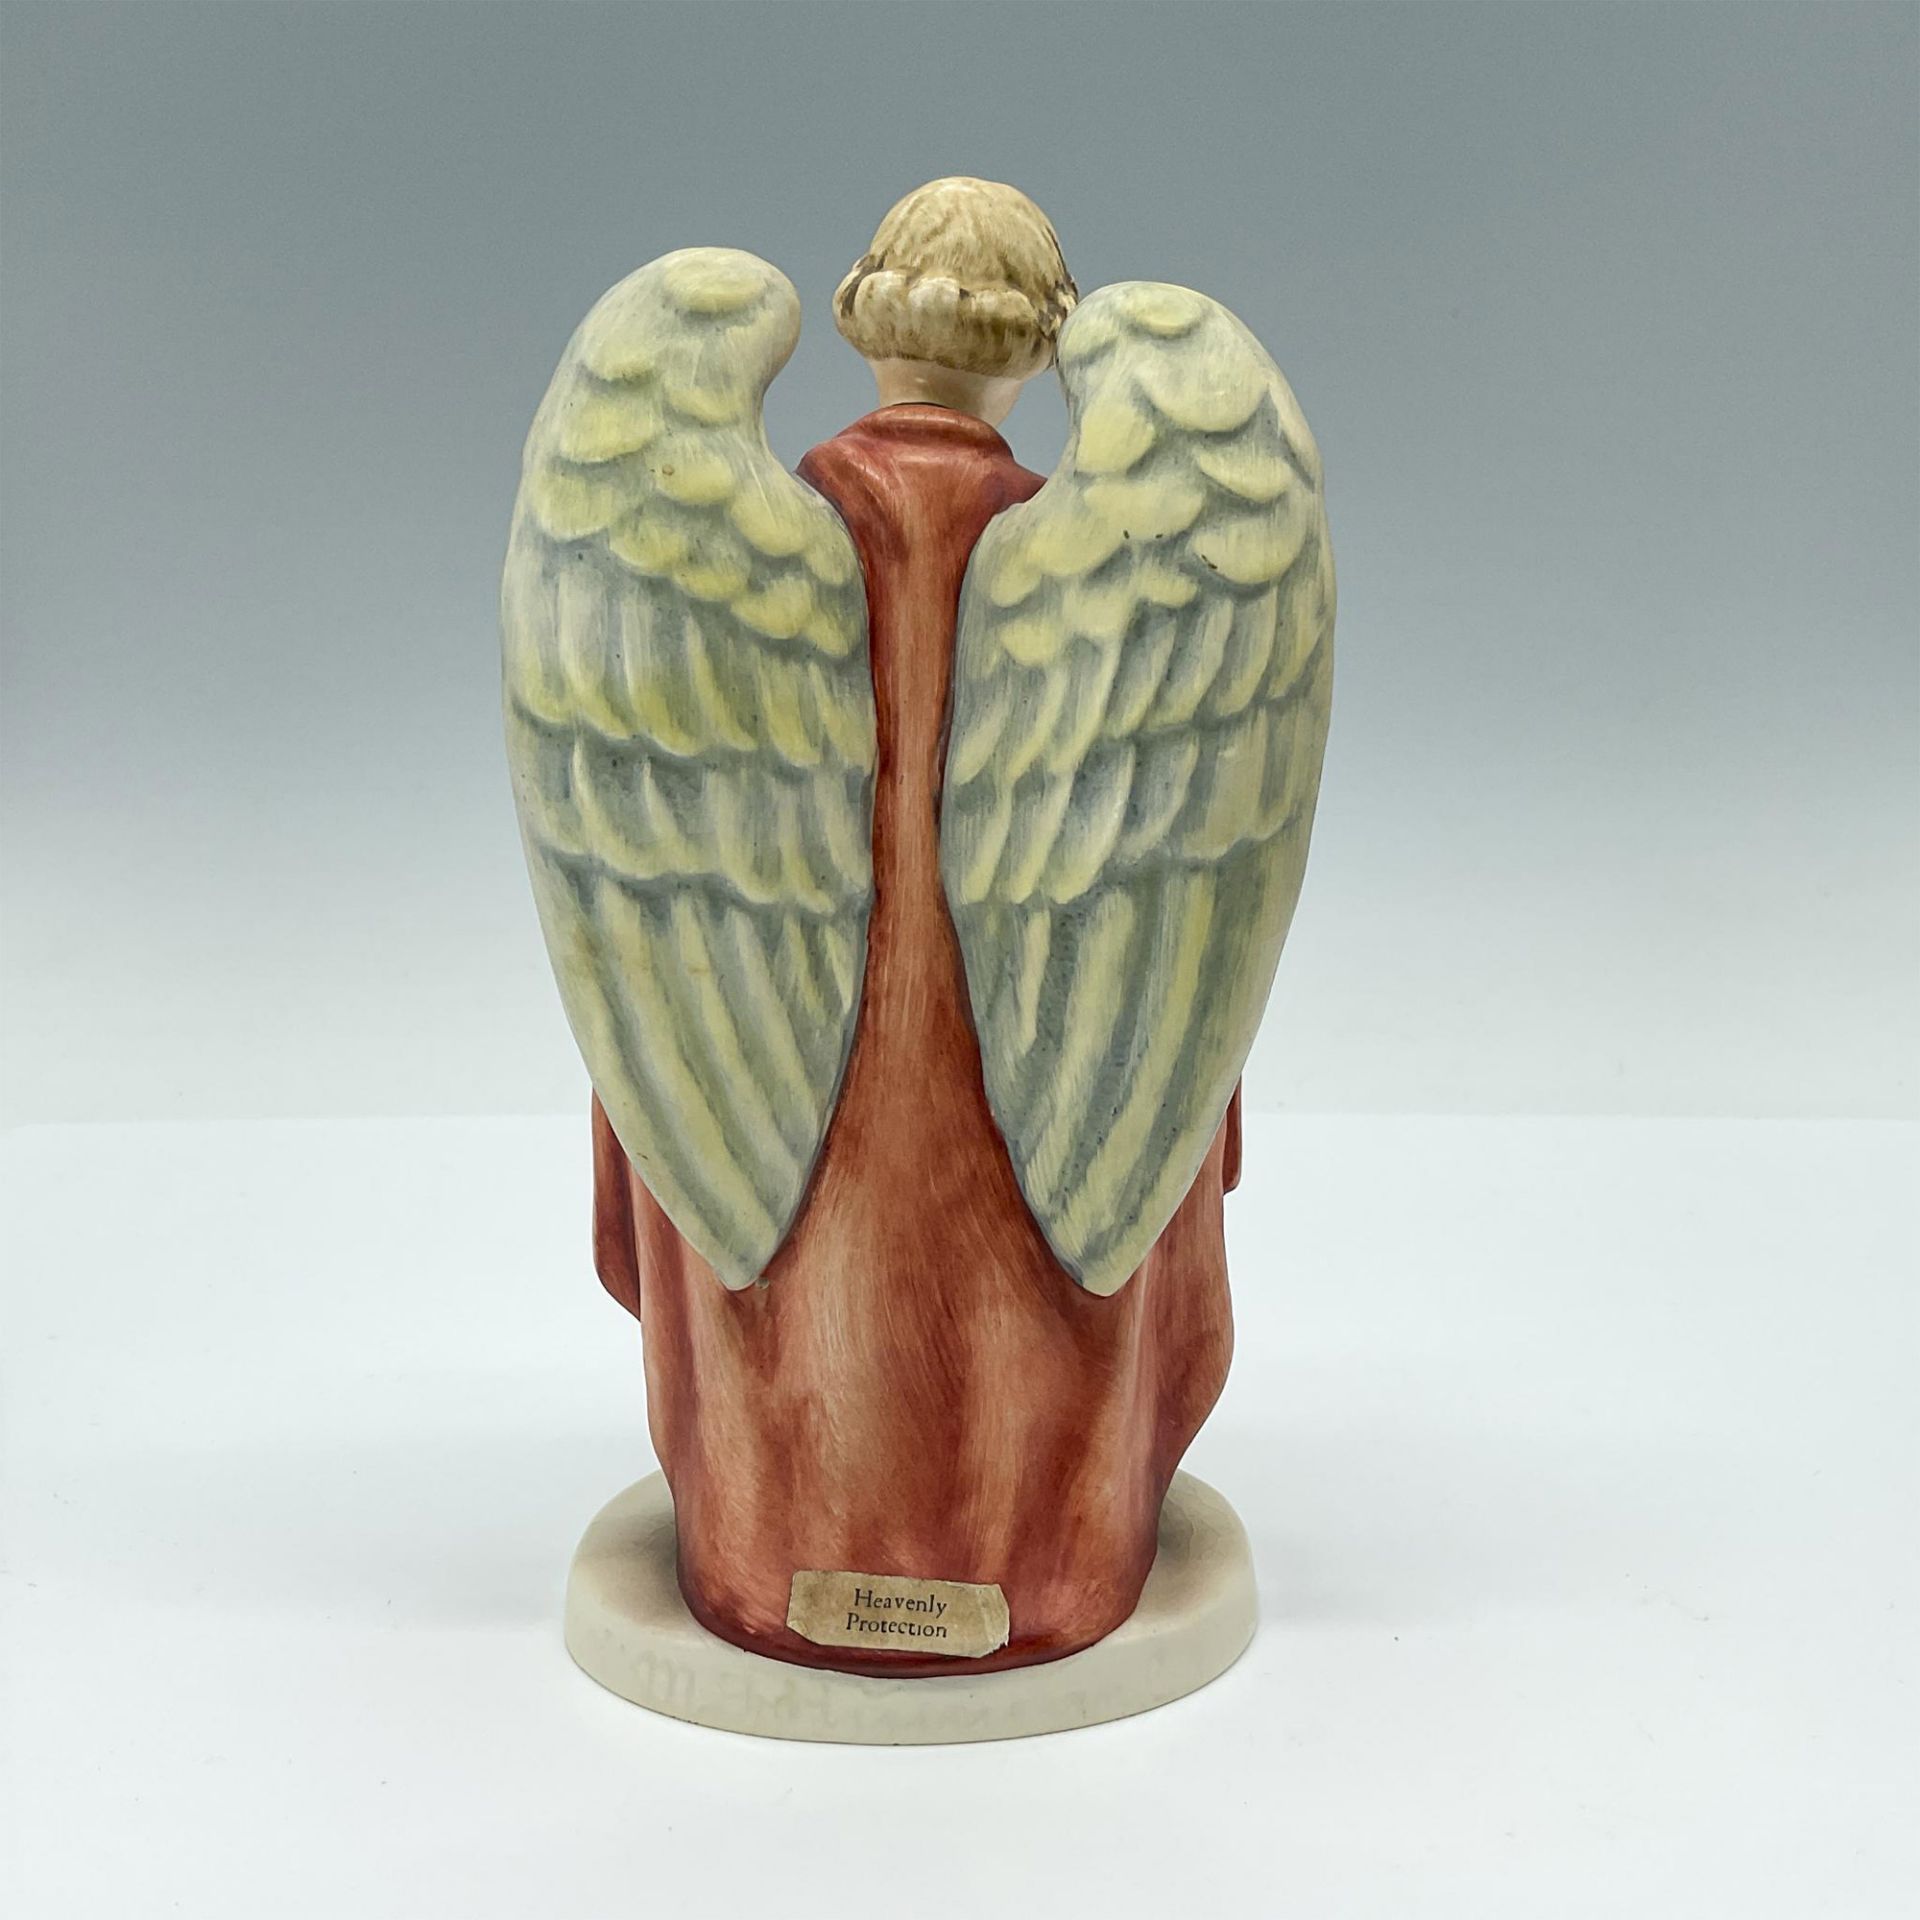 Heavenly Protection HUM 88/I - Goebel Hummel Figurine - Image 2 of 3